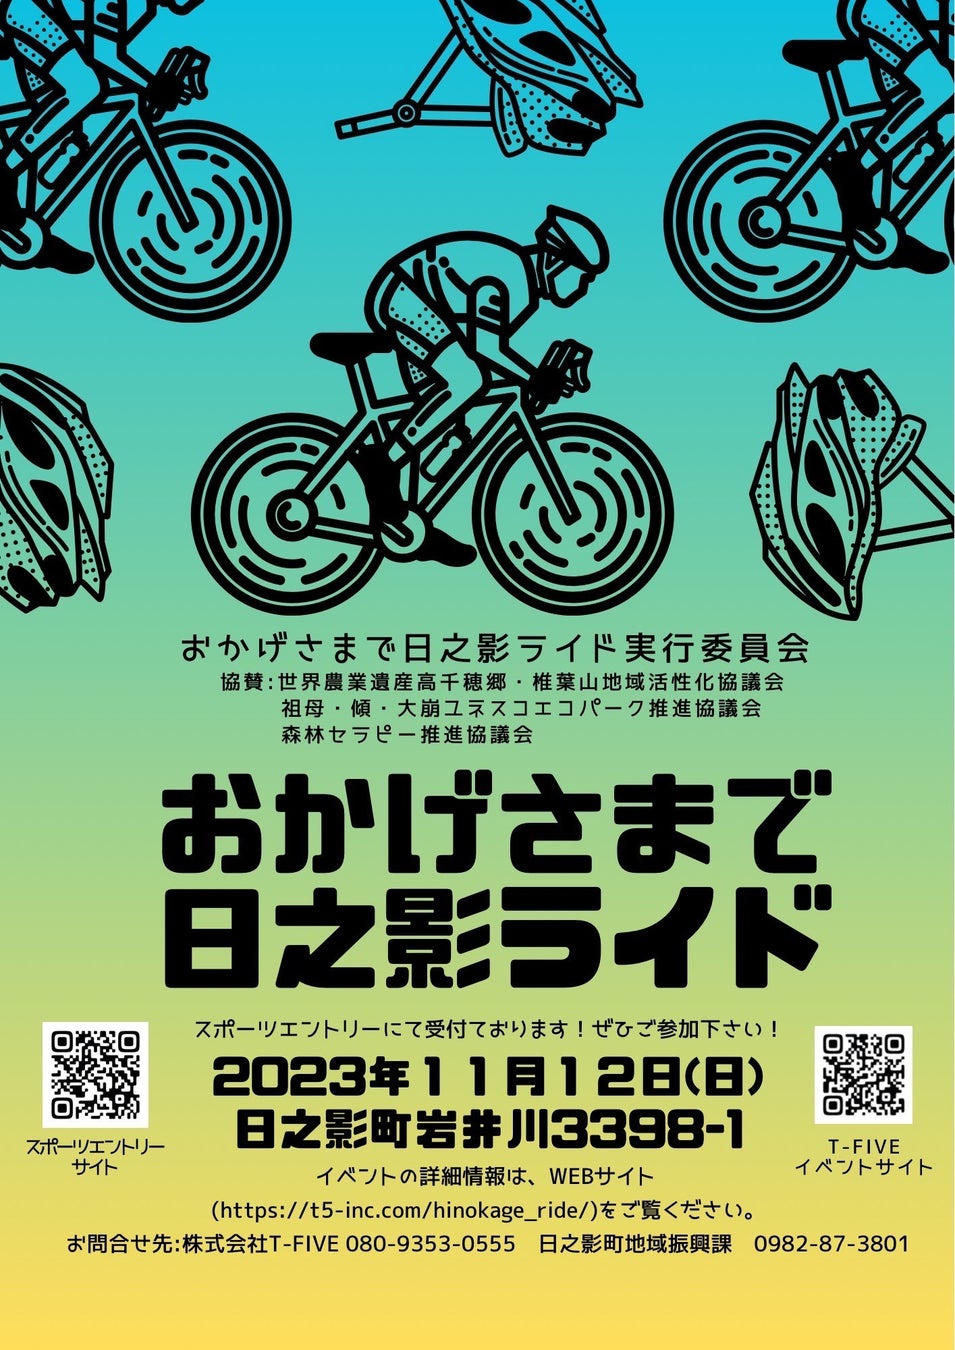 「おかげさまで日之影ライド」バイクイベント開催！